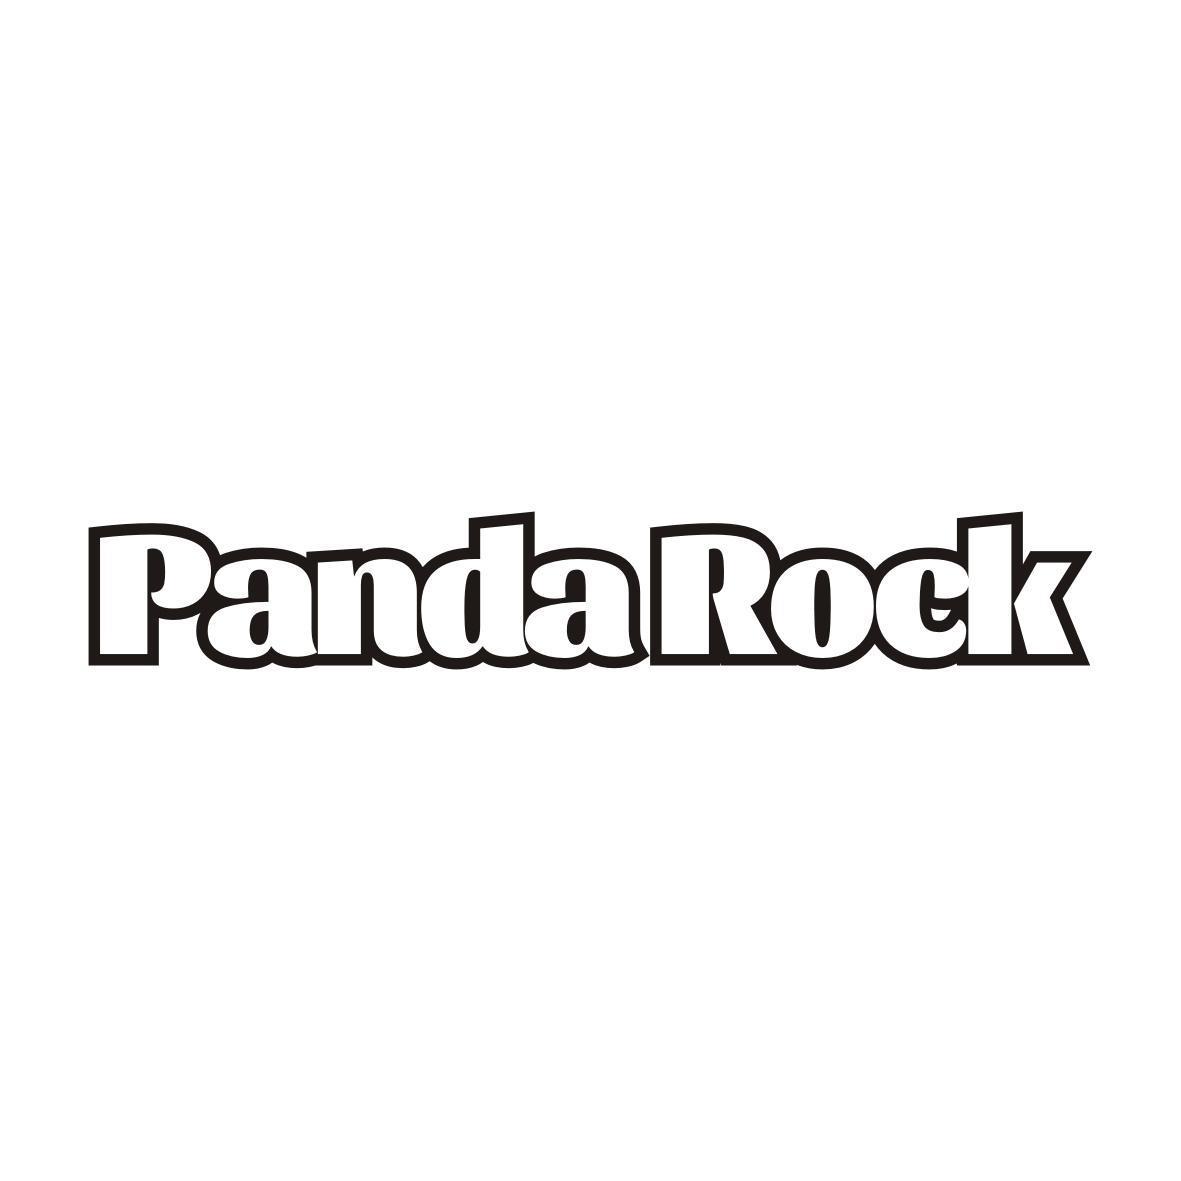 PANDA ROCK